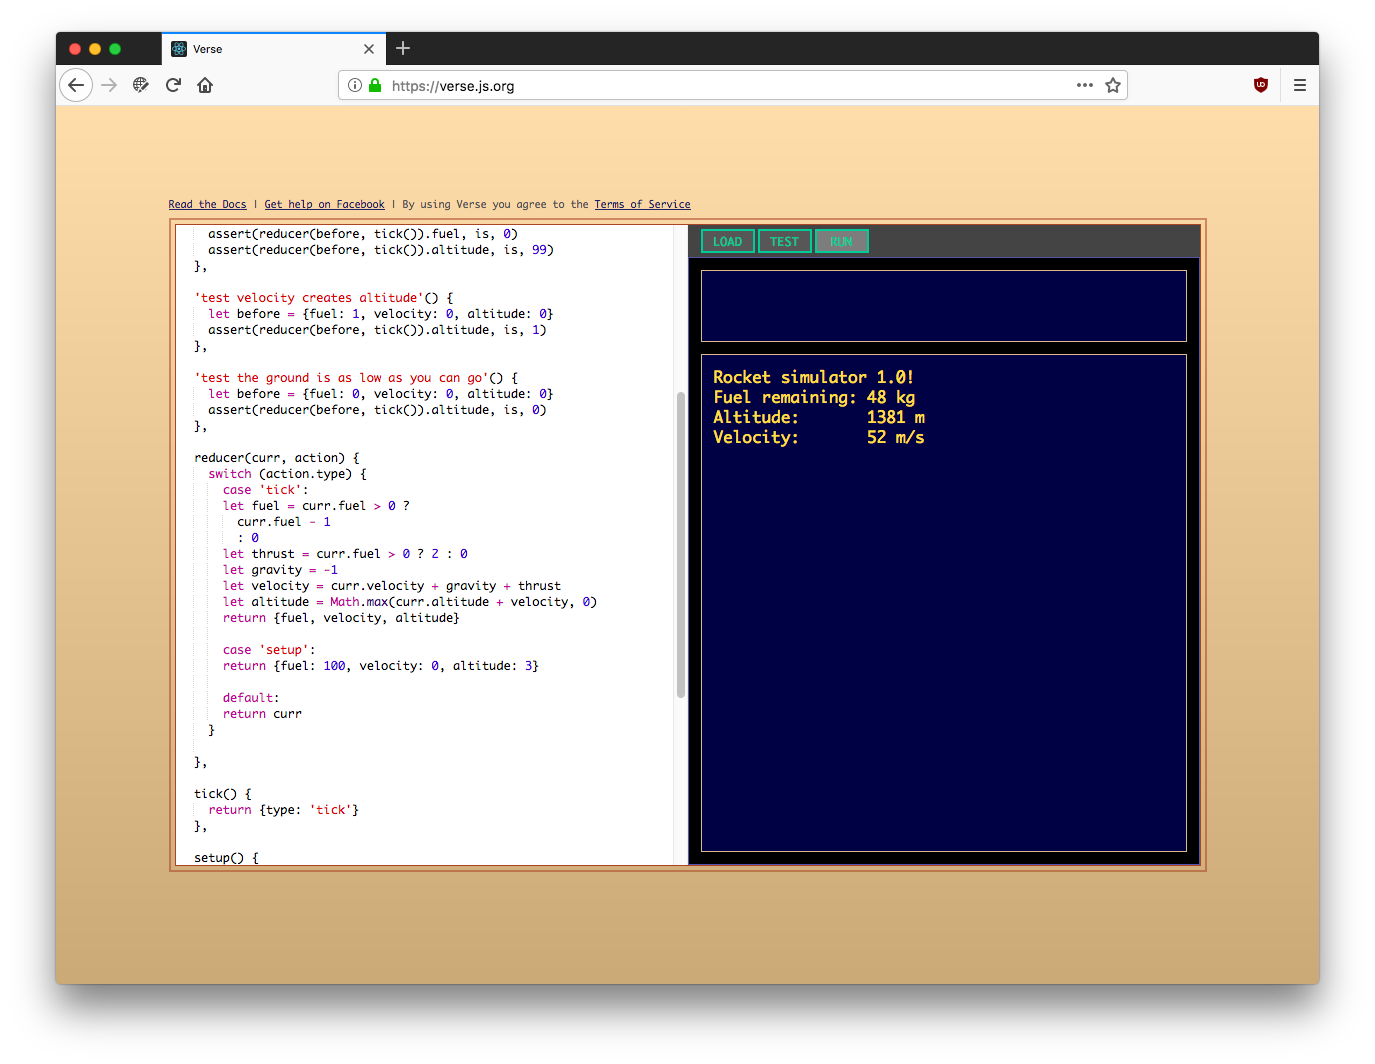 A screenshot of Verse running a simple program